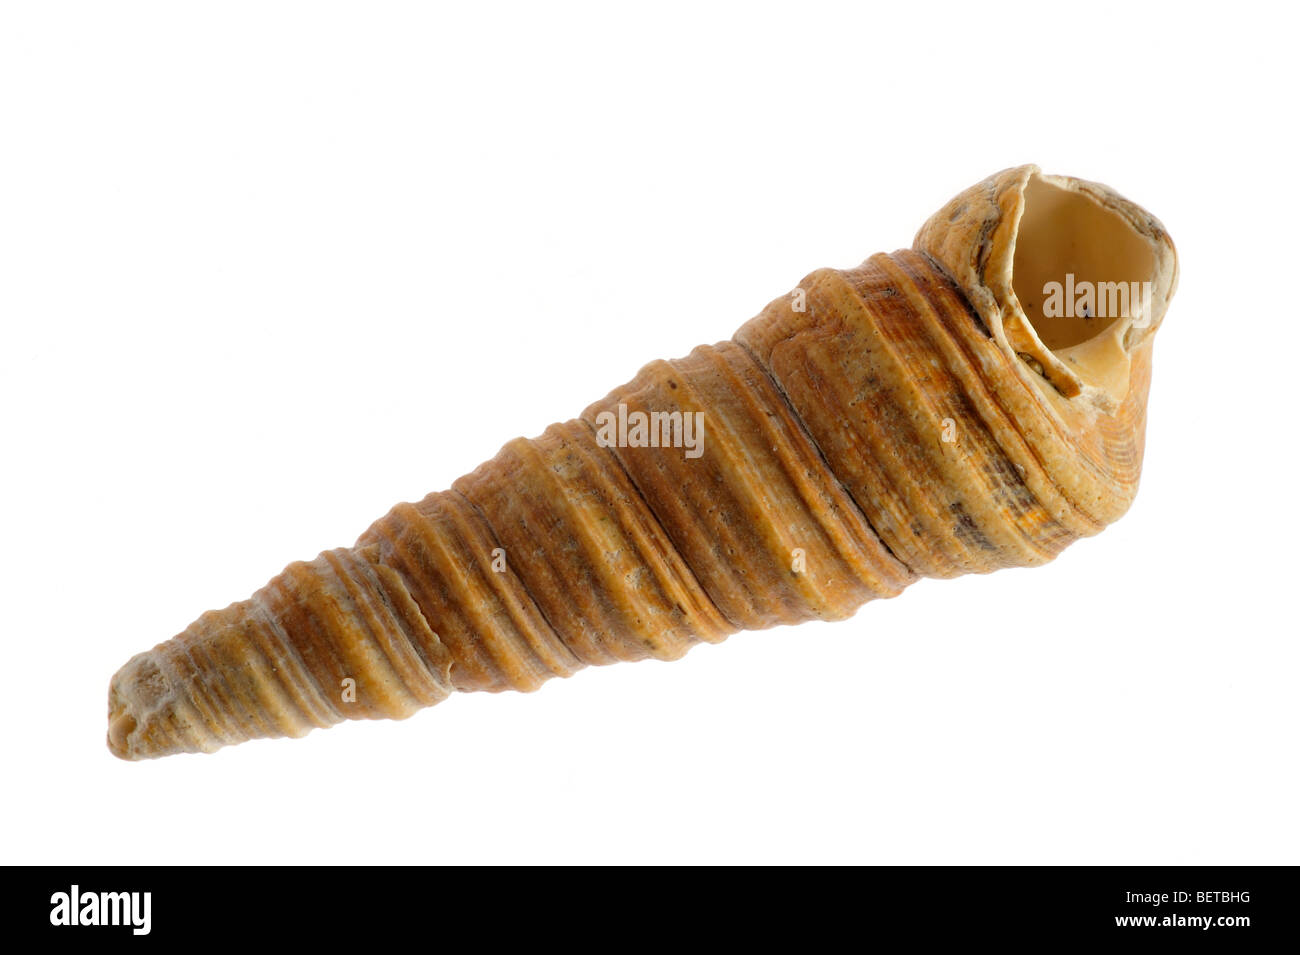 La torretta-guscio / guscio della coclea / torre comune shell (Turritella communis) su sfondo bianco Foto Stock